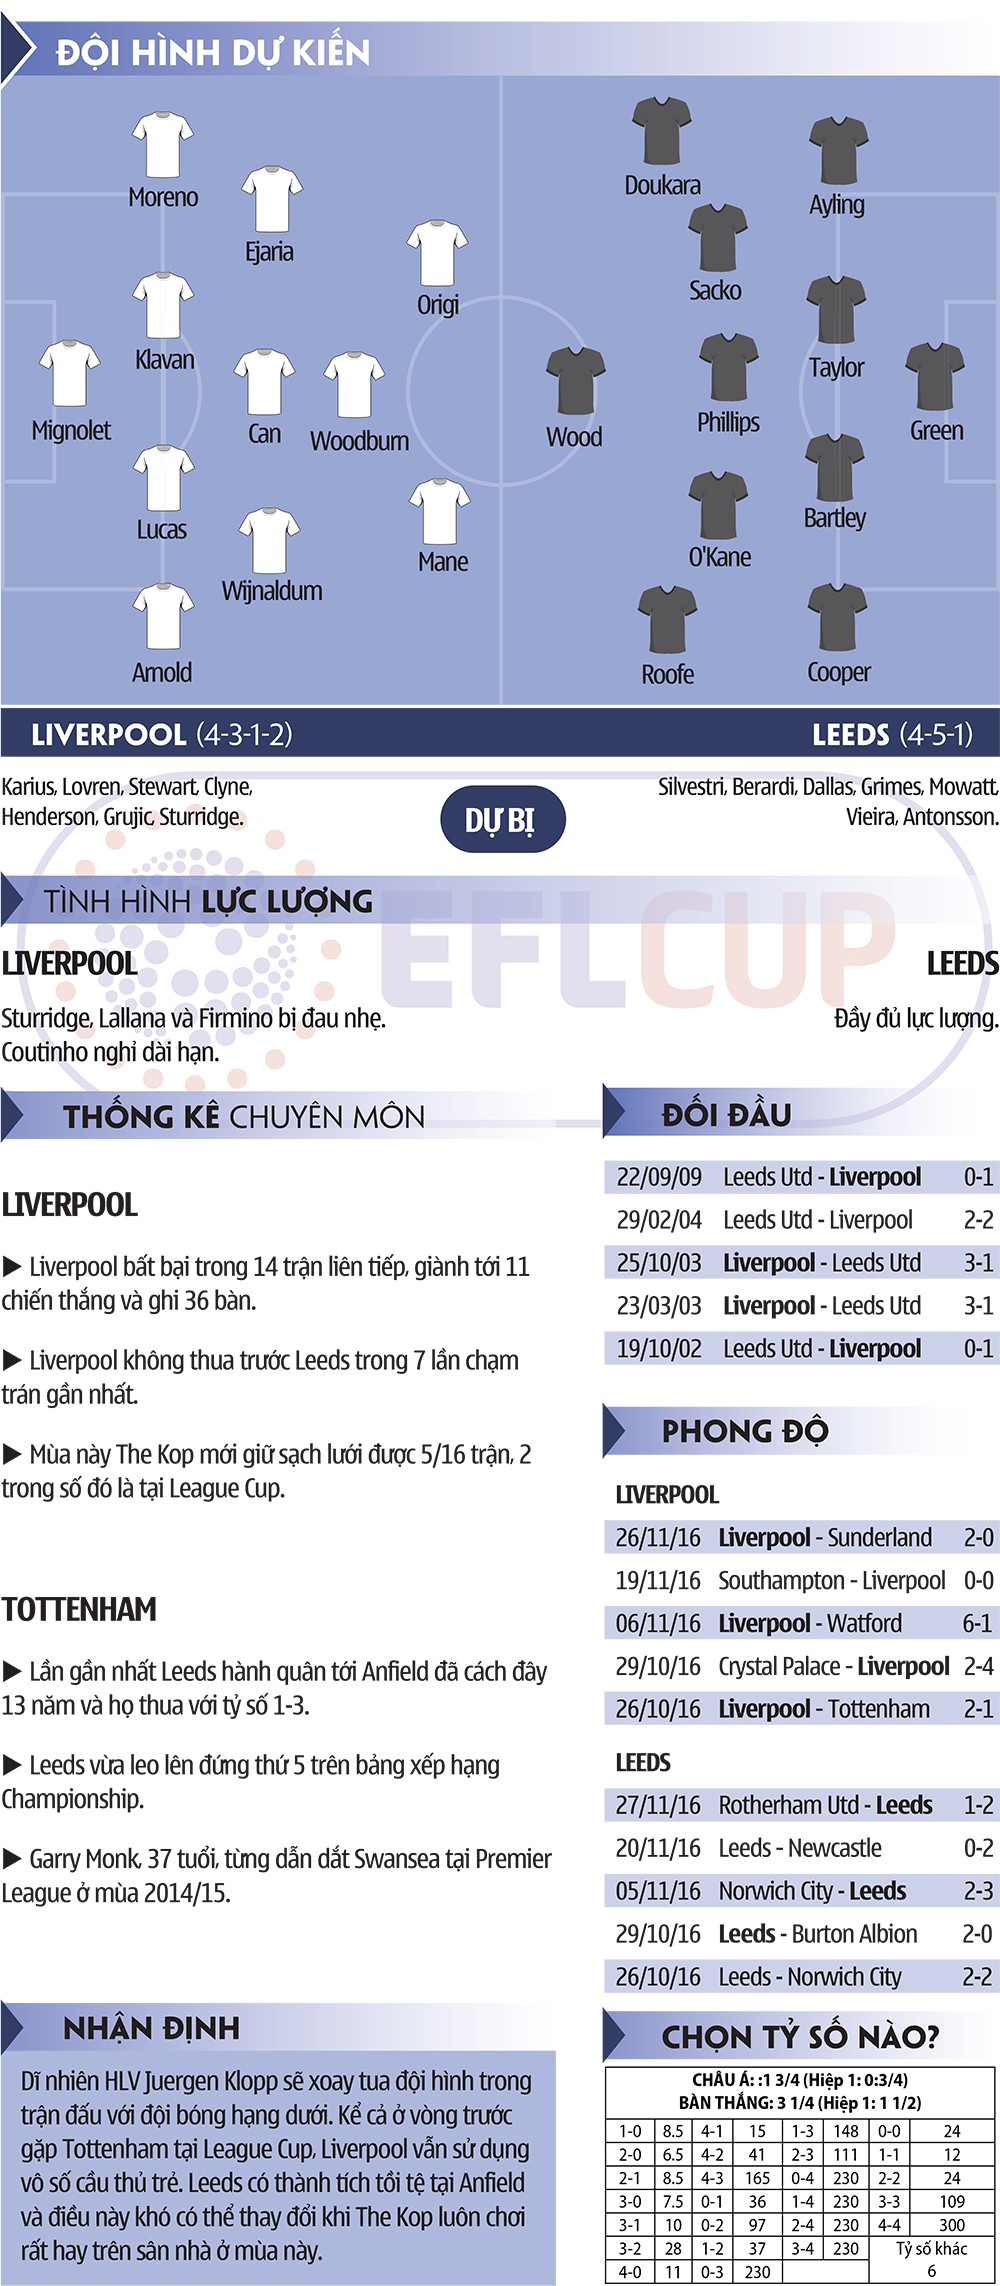 Liverpool - Leeds: Có cần nhung nhớ Coutinho? 